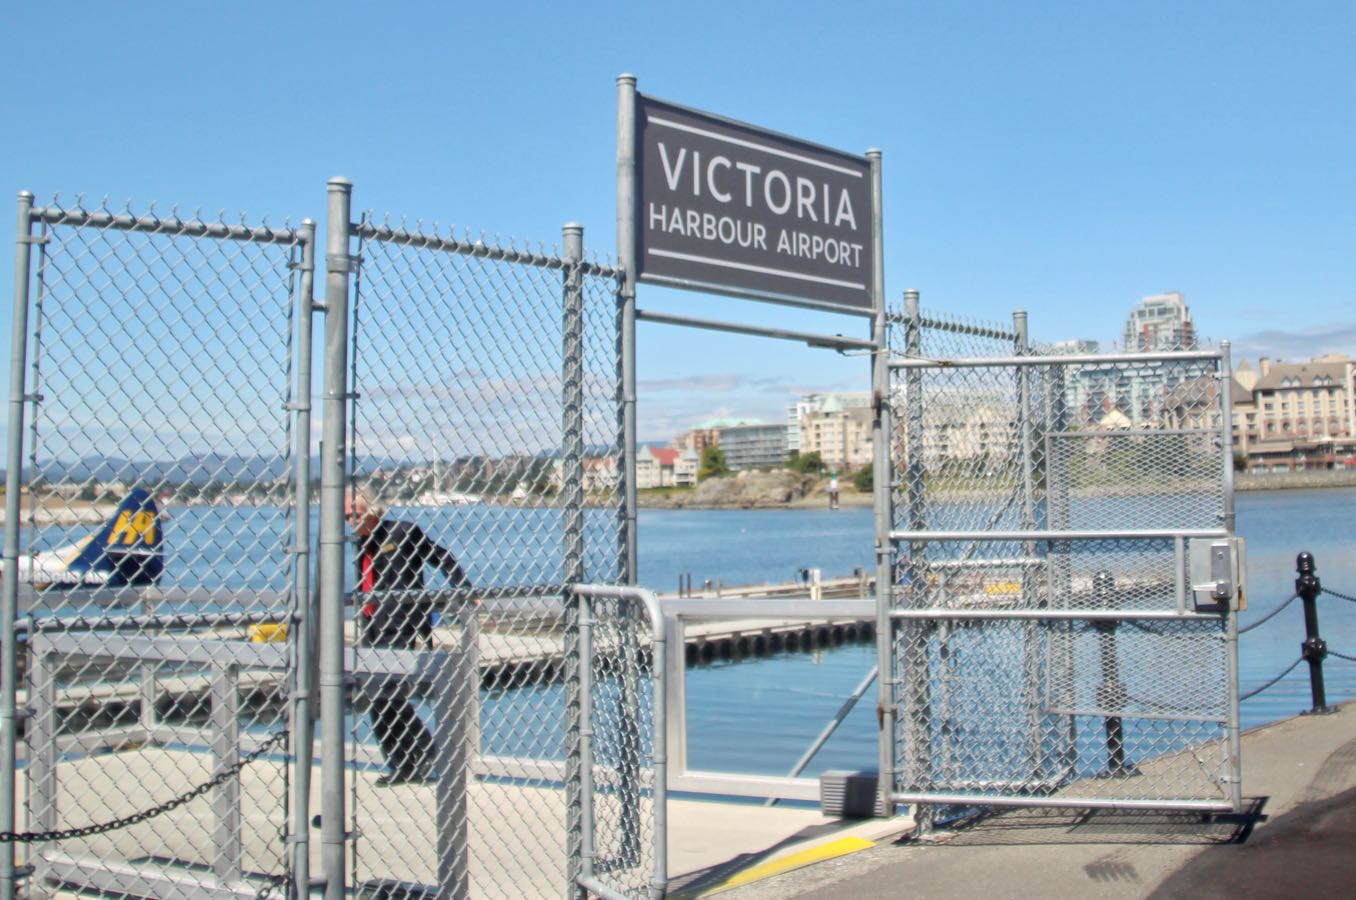 「Victoria Harbour Airport」への階段の入り口